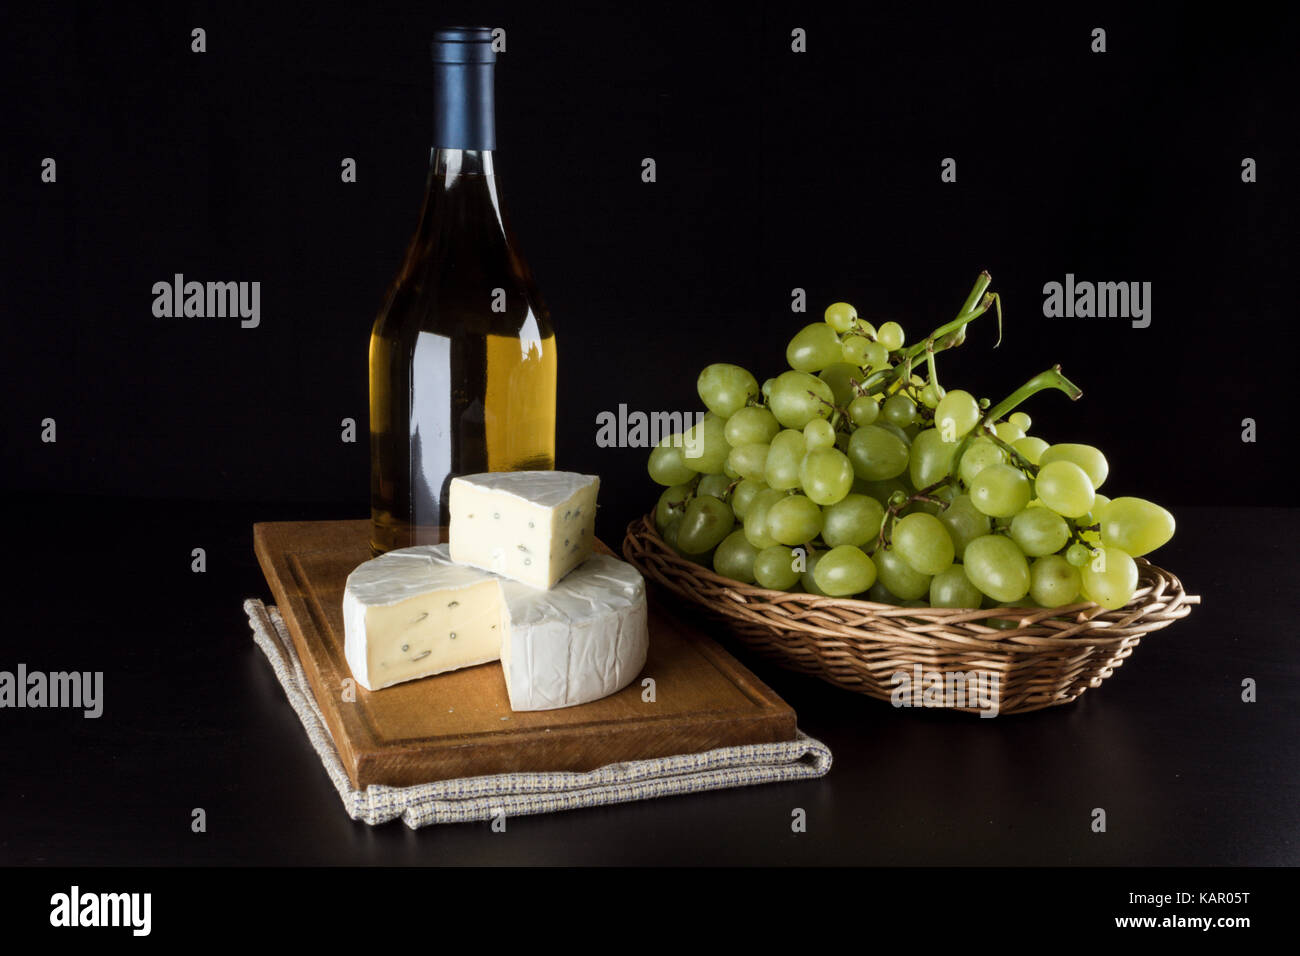 Une bouteille de vin blanc à l'arrière-plan, des raisins dans un panier et dor le fromage bleu sur fond noir Banque D'Images